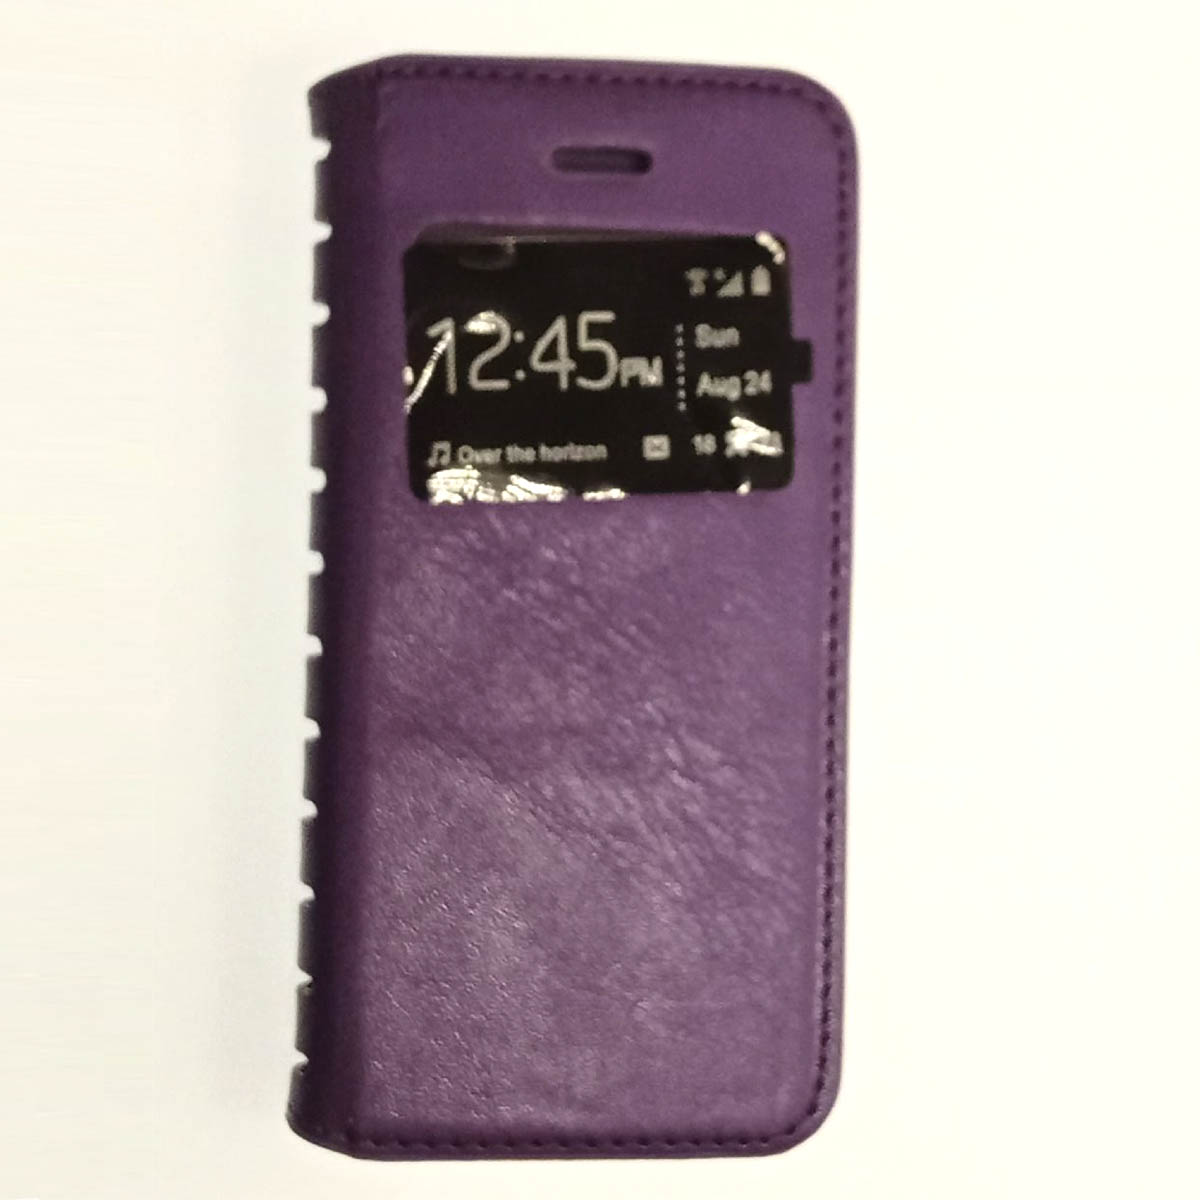 Чехол-книжка в бок для Apple iPhone 5/5S/SE фиолетового цвета с окошком.